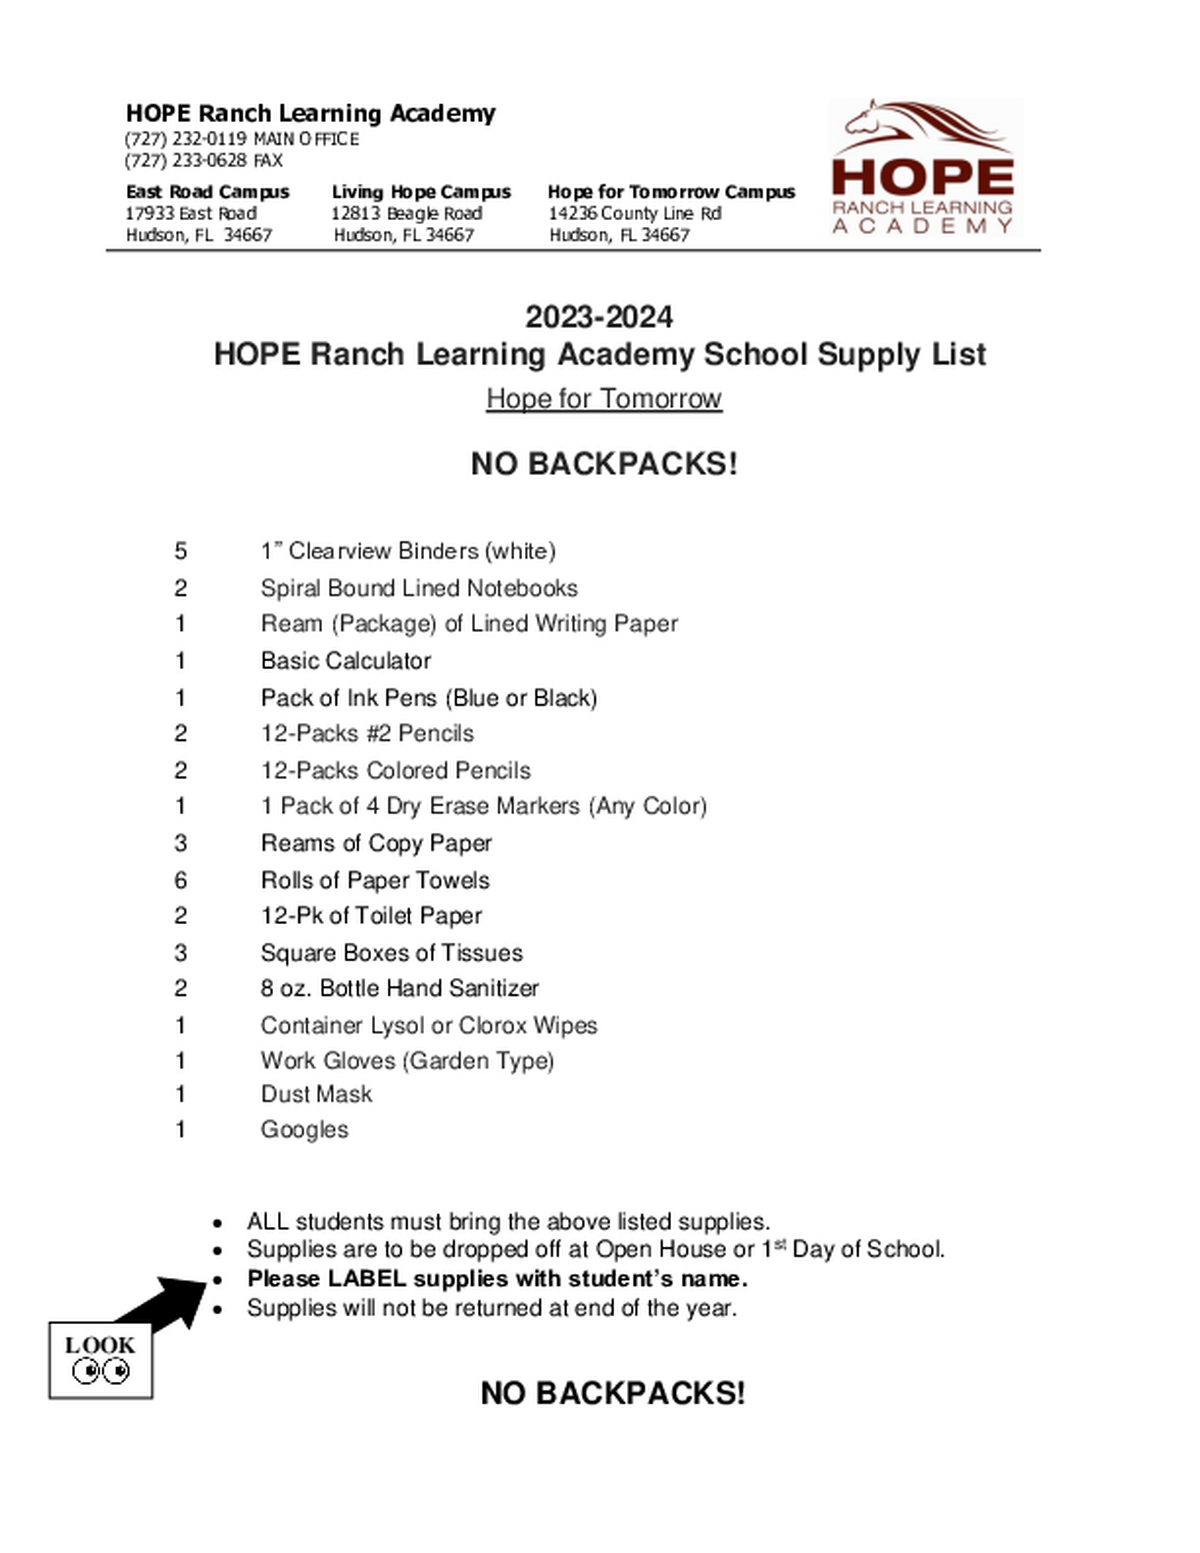 2023-2024 Supply List HFT